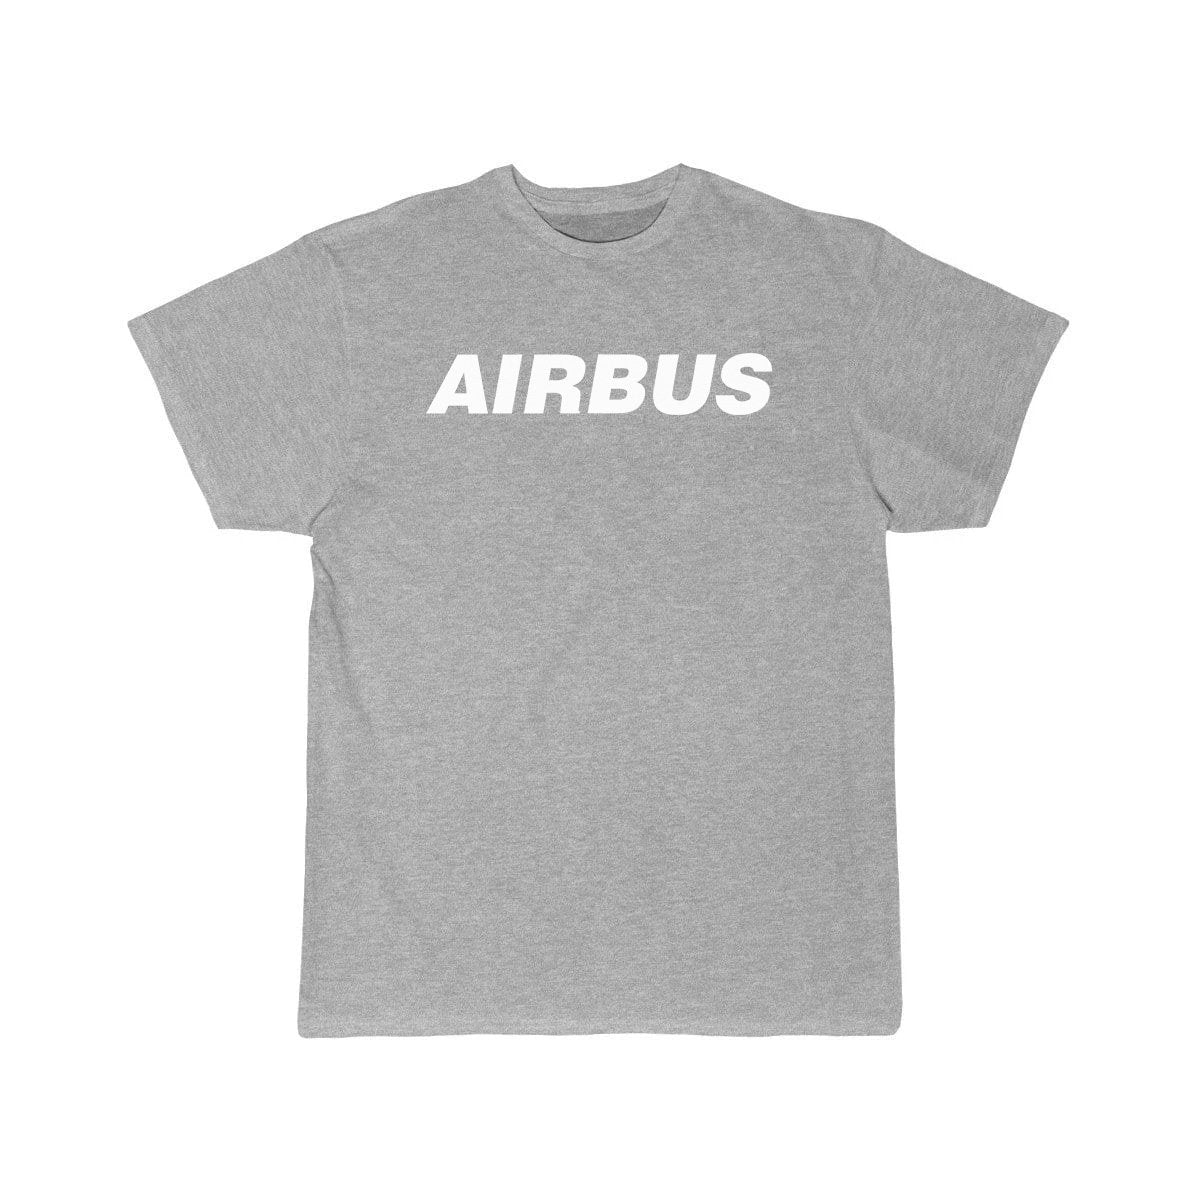 AIRBUS DESIGNED T SHIRT THE AV8R